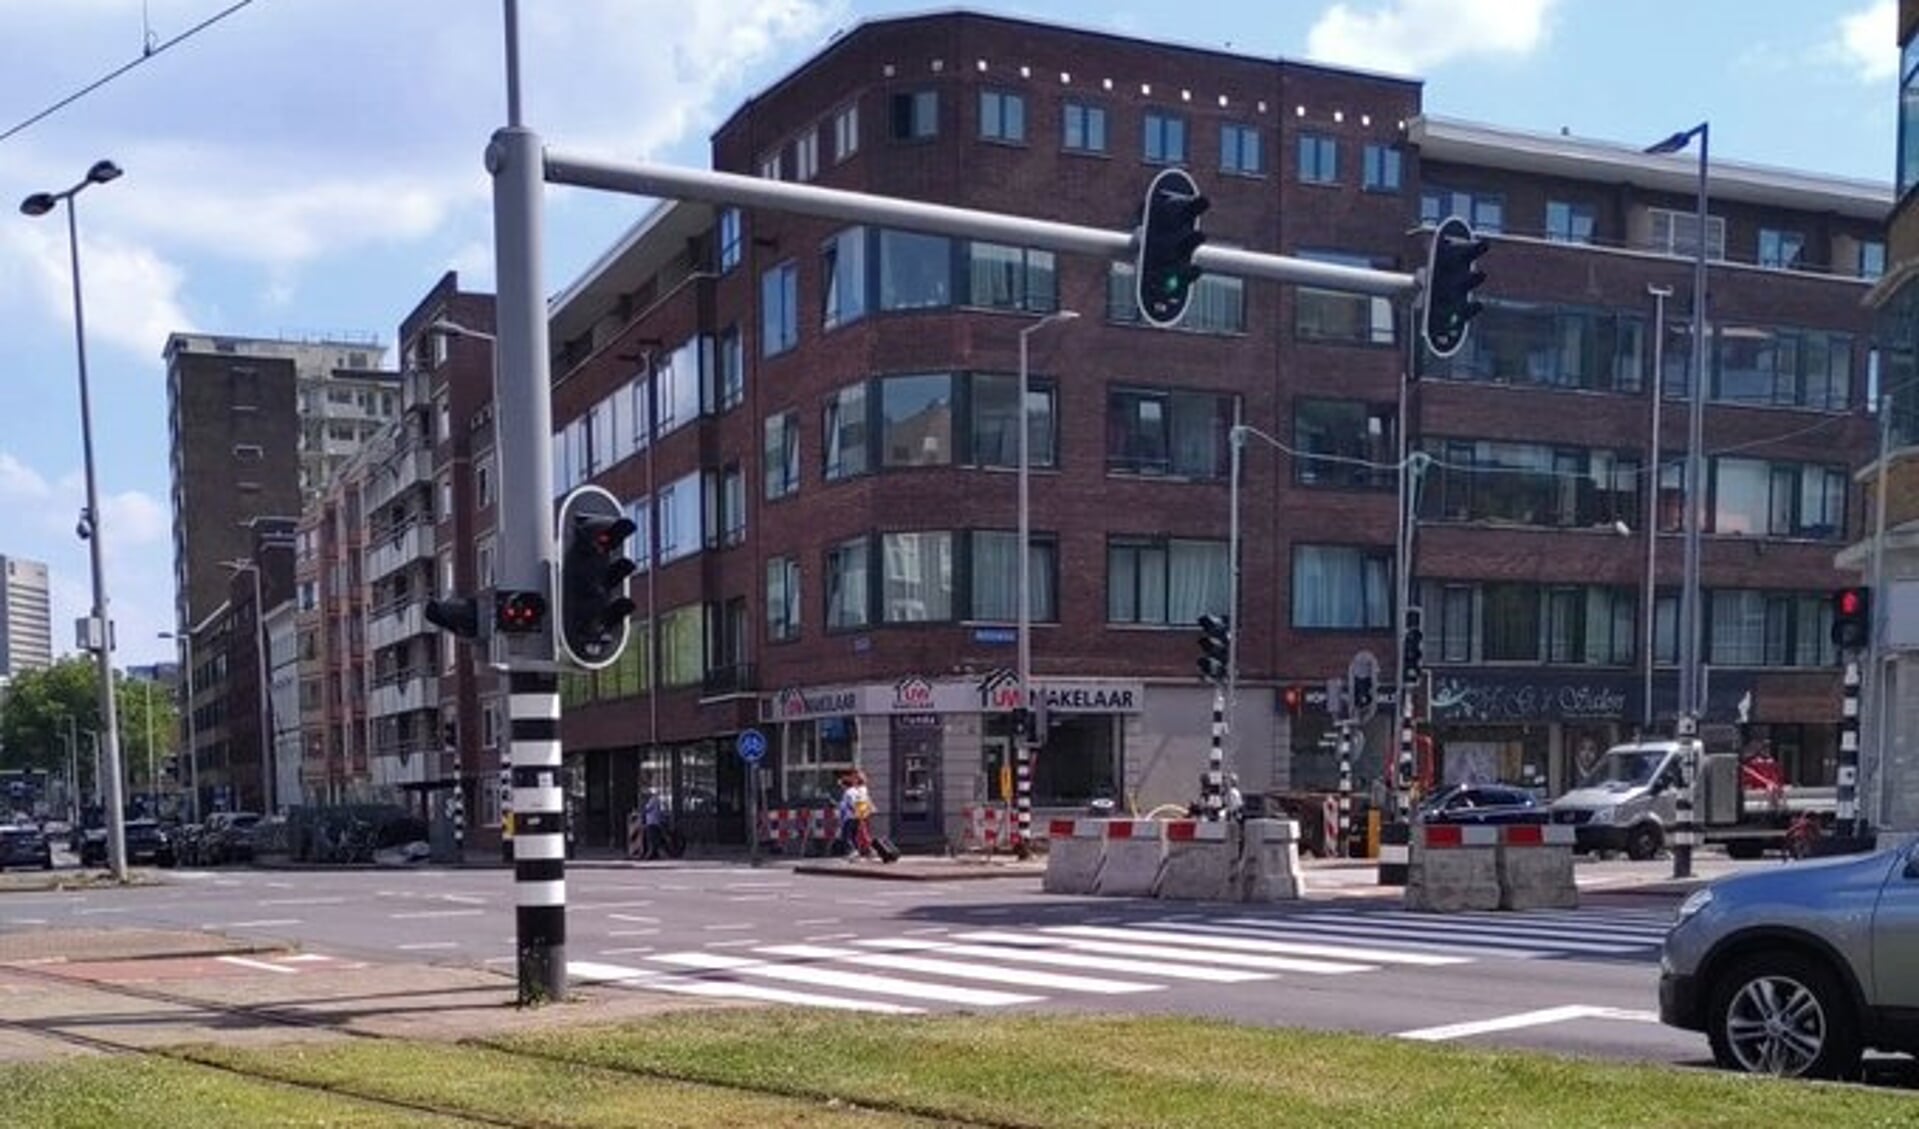 De gemeente kijkt of de (tijdelijke) afsluiting de weg veiliger maakt voor fietsers. Foto: Rotterdam Onderweg